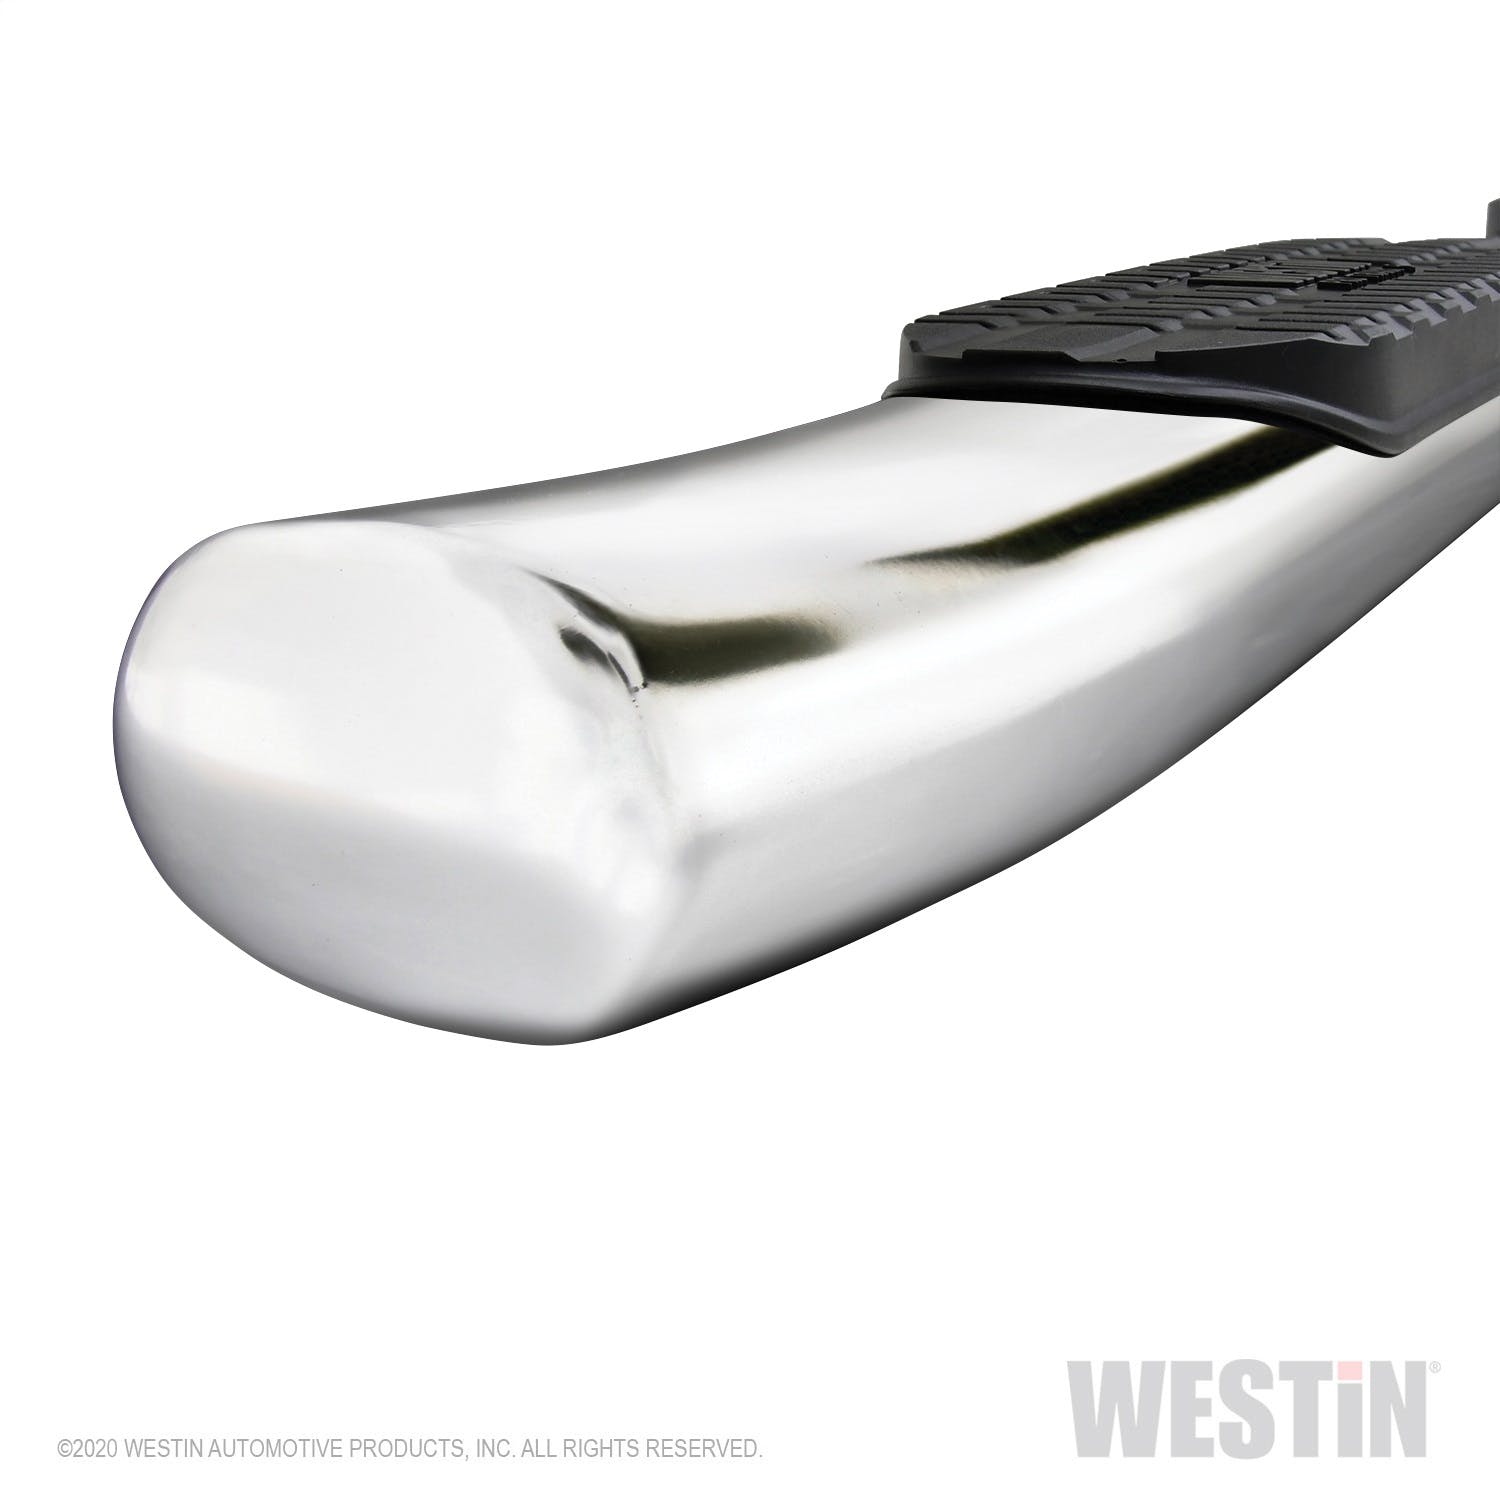 Westin Automotive 21-534760 PRO Traxx 5 Oval W2W Nerf Step Bars, Stainless Steel